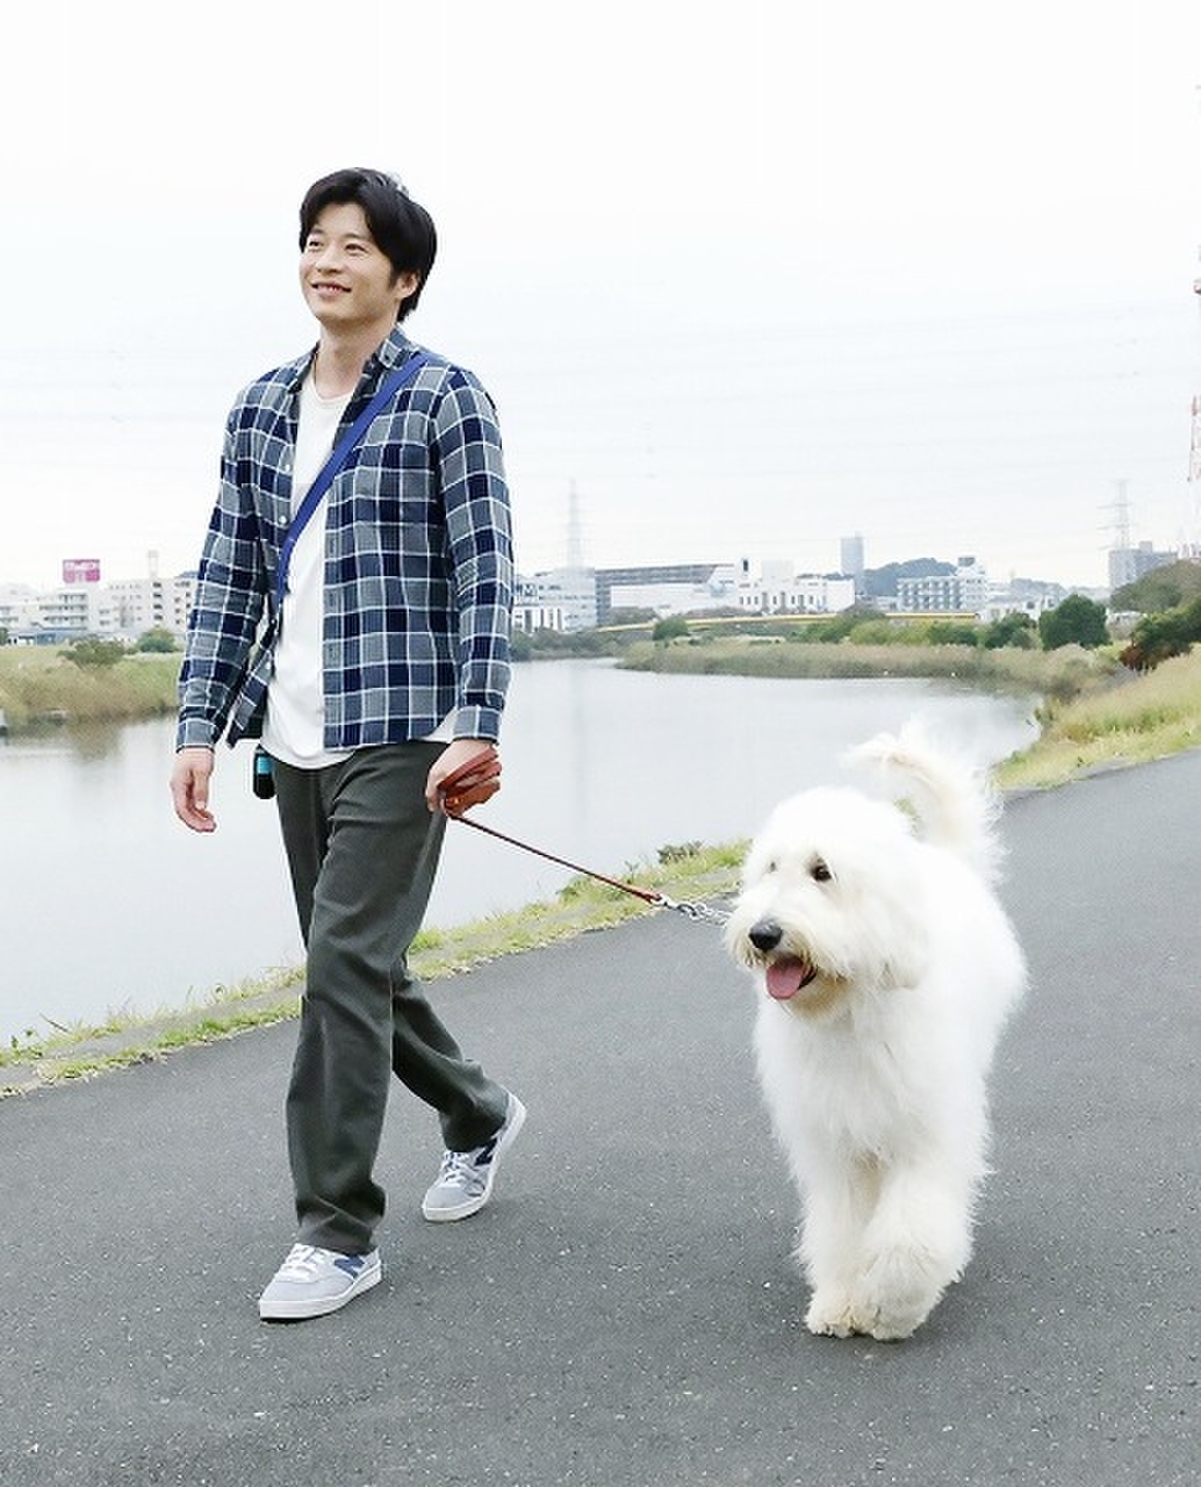 CGに間違われないか心配」 田中圭「ハウ」俳優犬ベックが魅せた“名優級